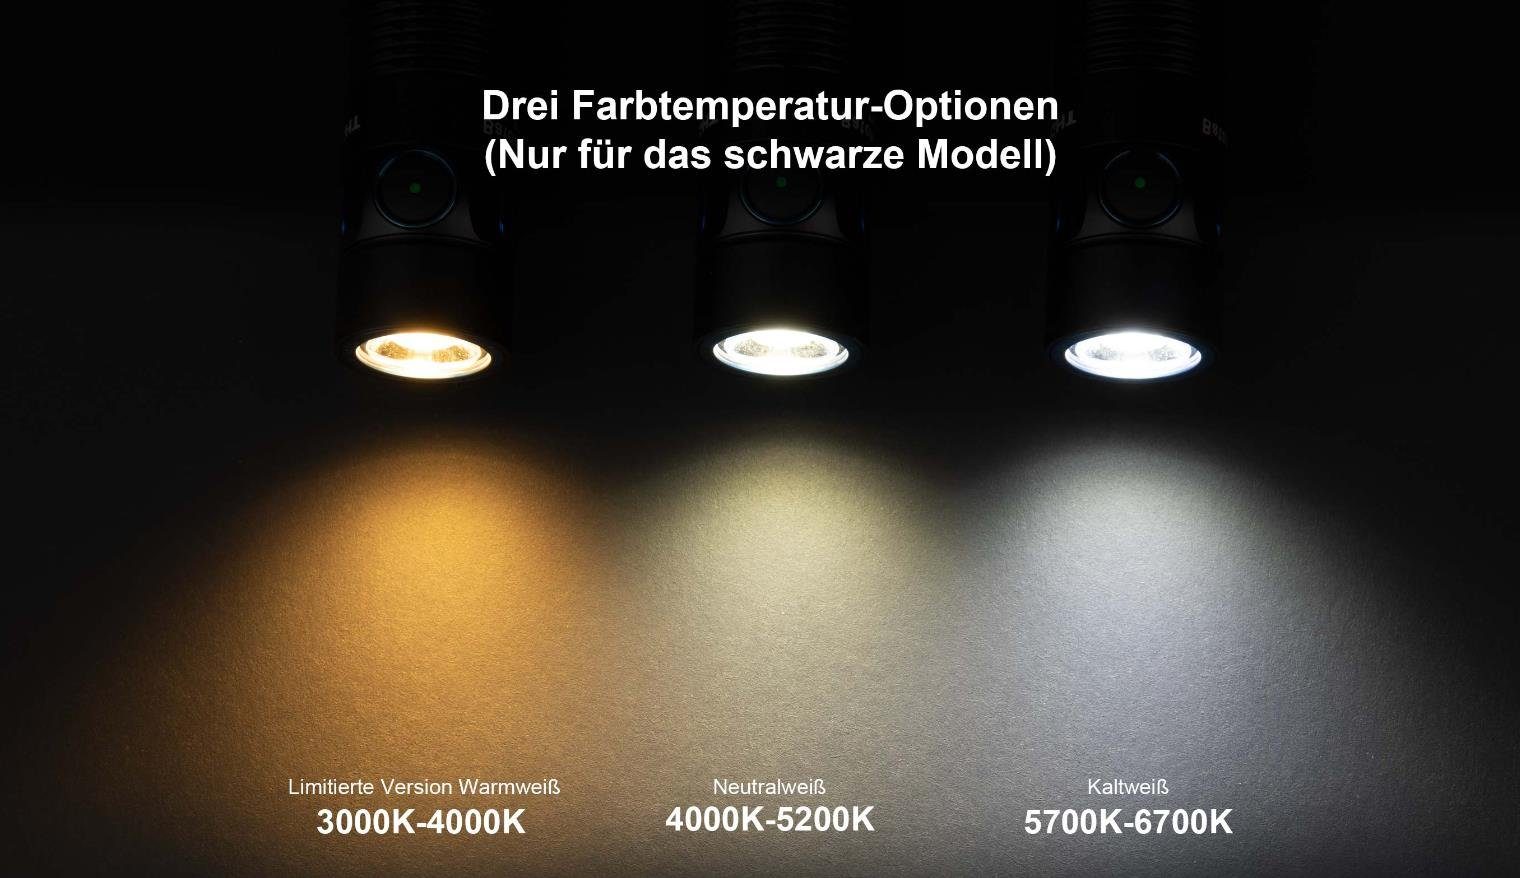 EDC Aufladbare OLIGHT Stonewash Taschenlampe 3 Messing Pro Baton LED Max Taschenlampe